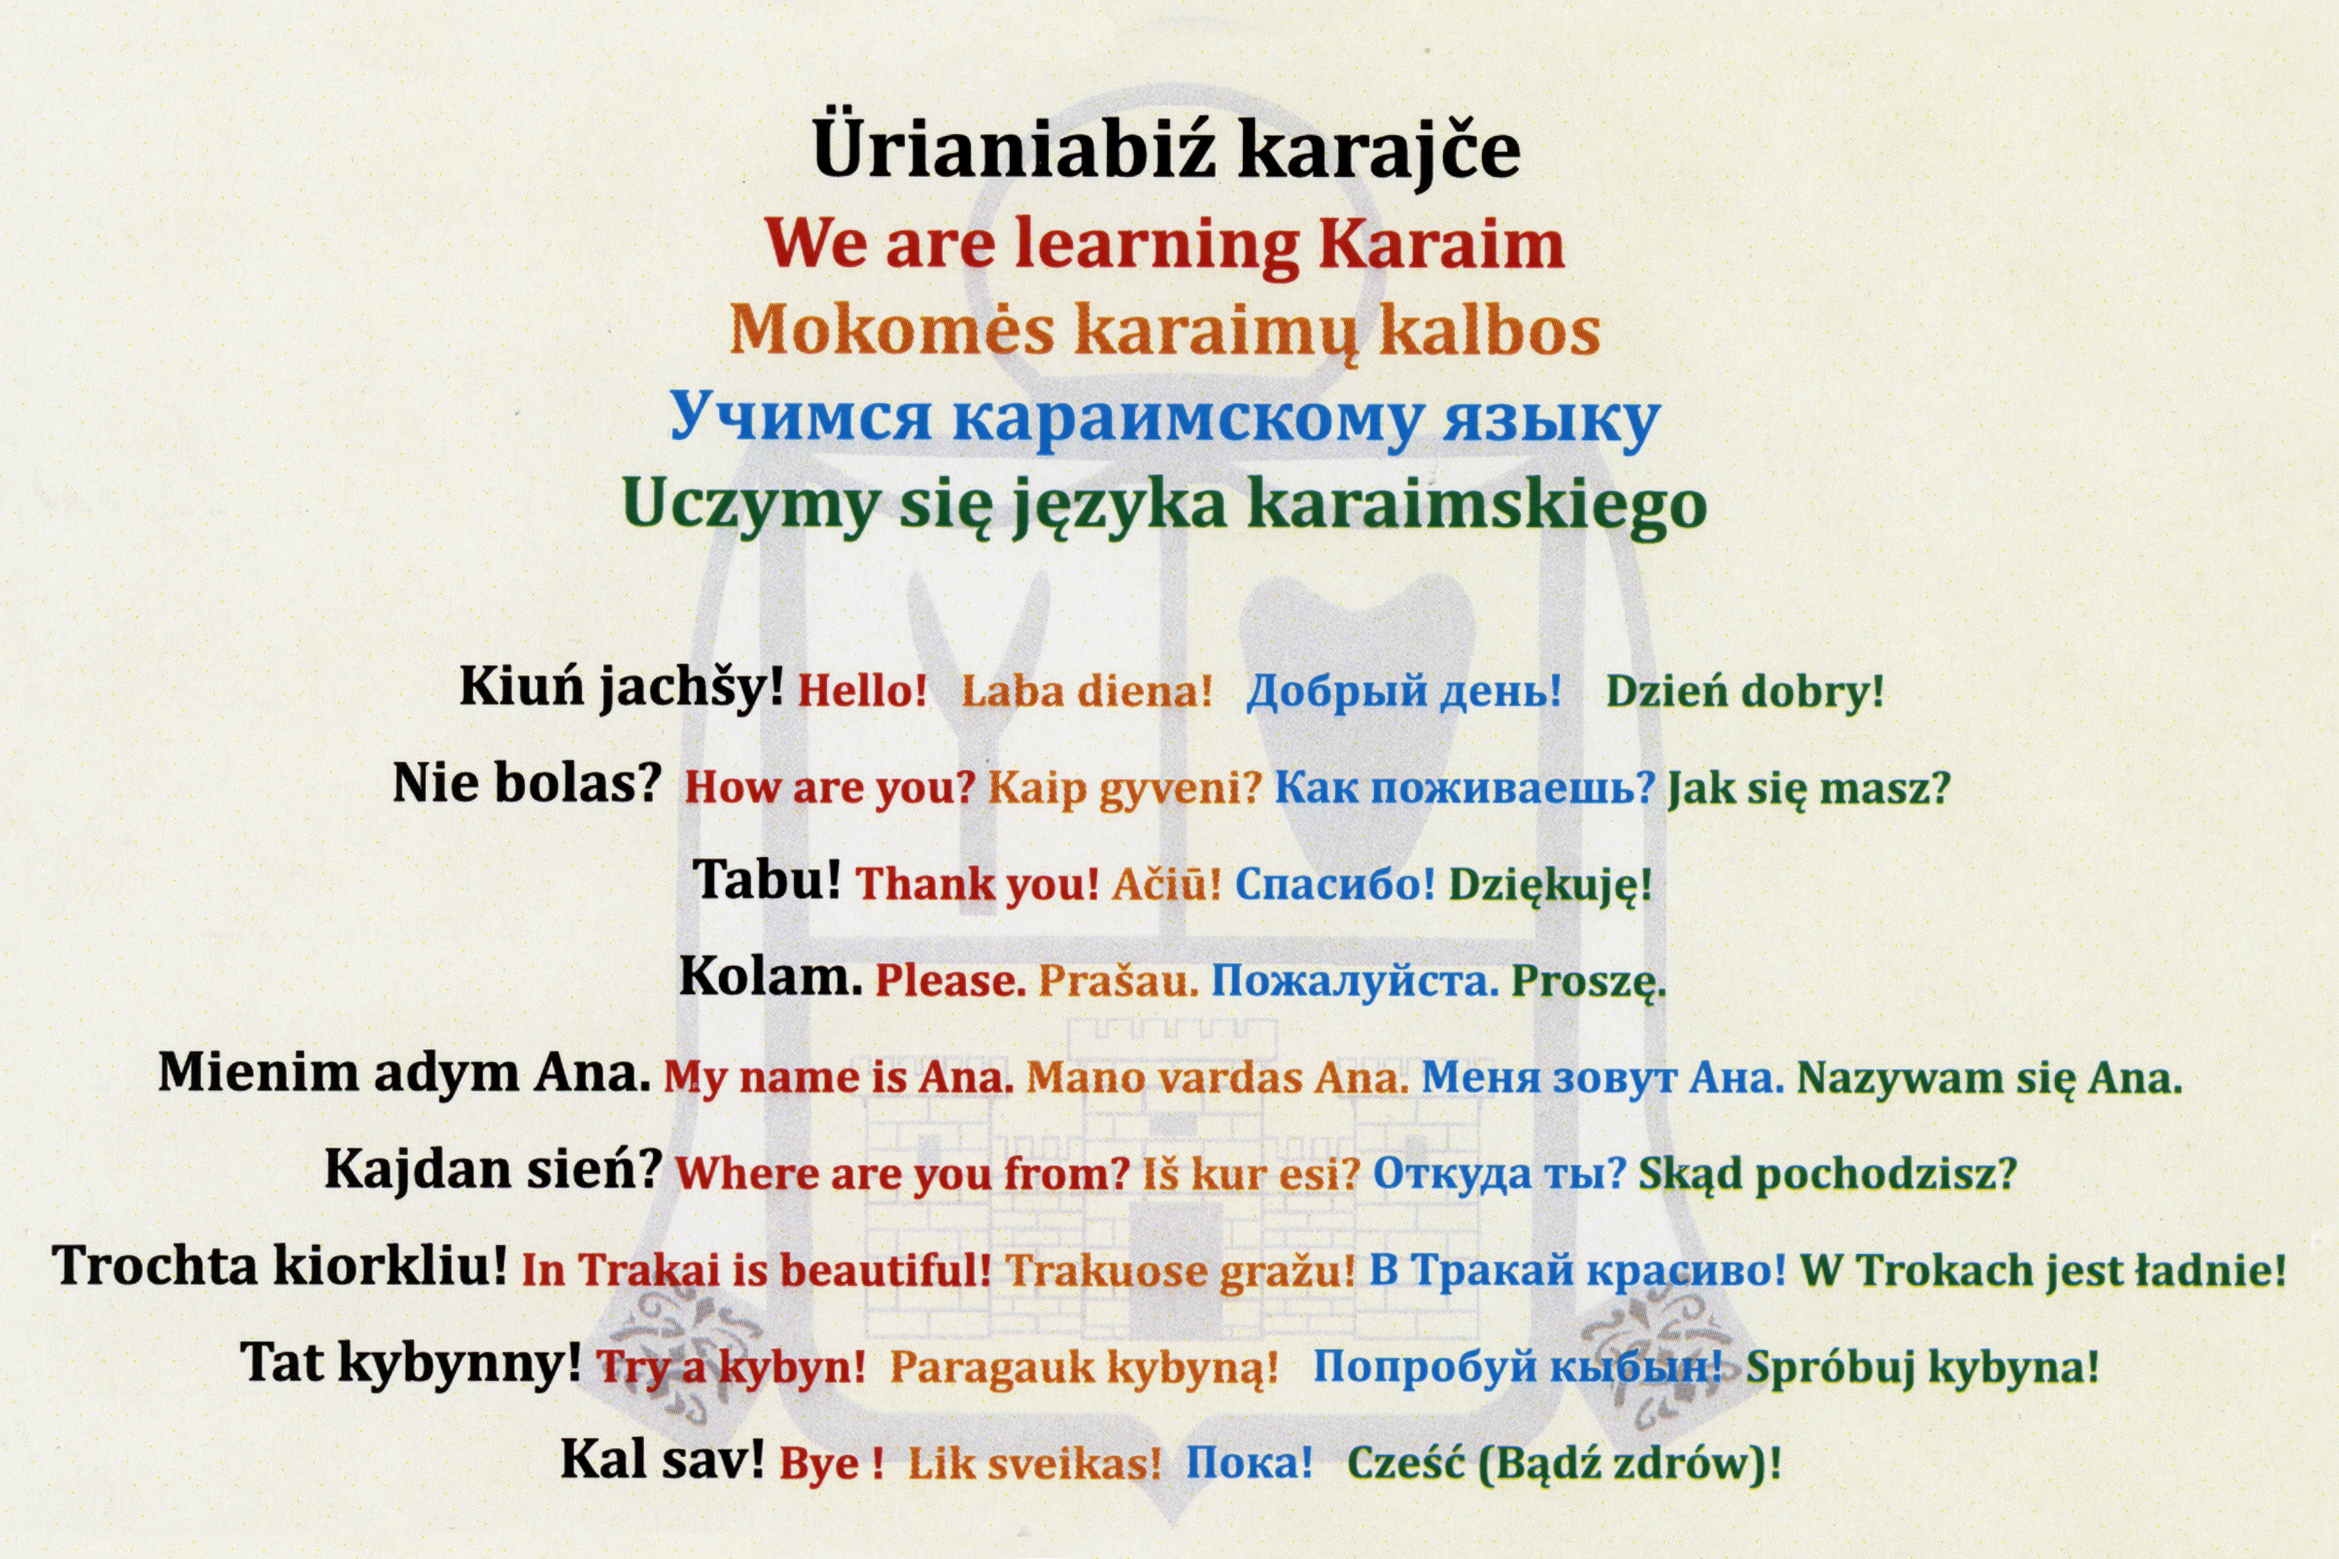 Z wielojęzycznej kartki pocztowej turyści zwiedzający Troki mogli nauczyć się podstawowych zwrotów po karaimsku.